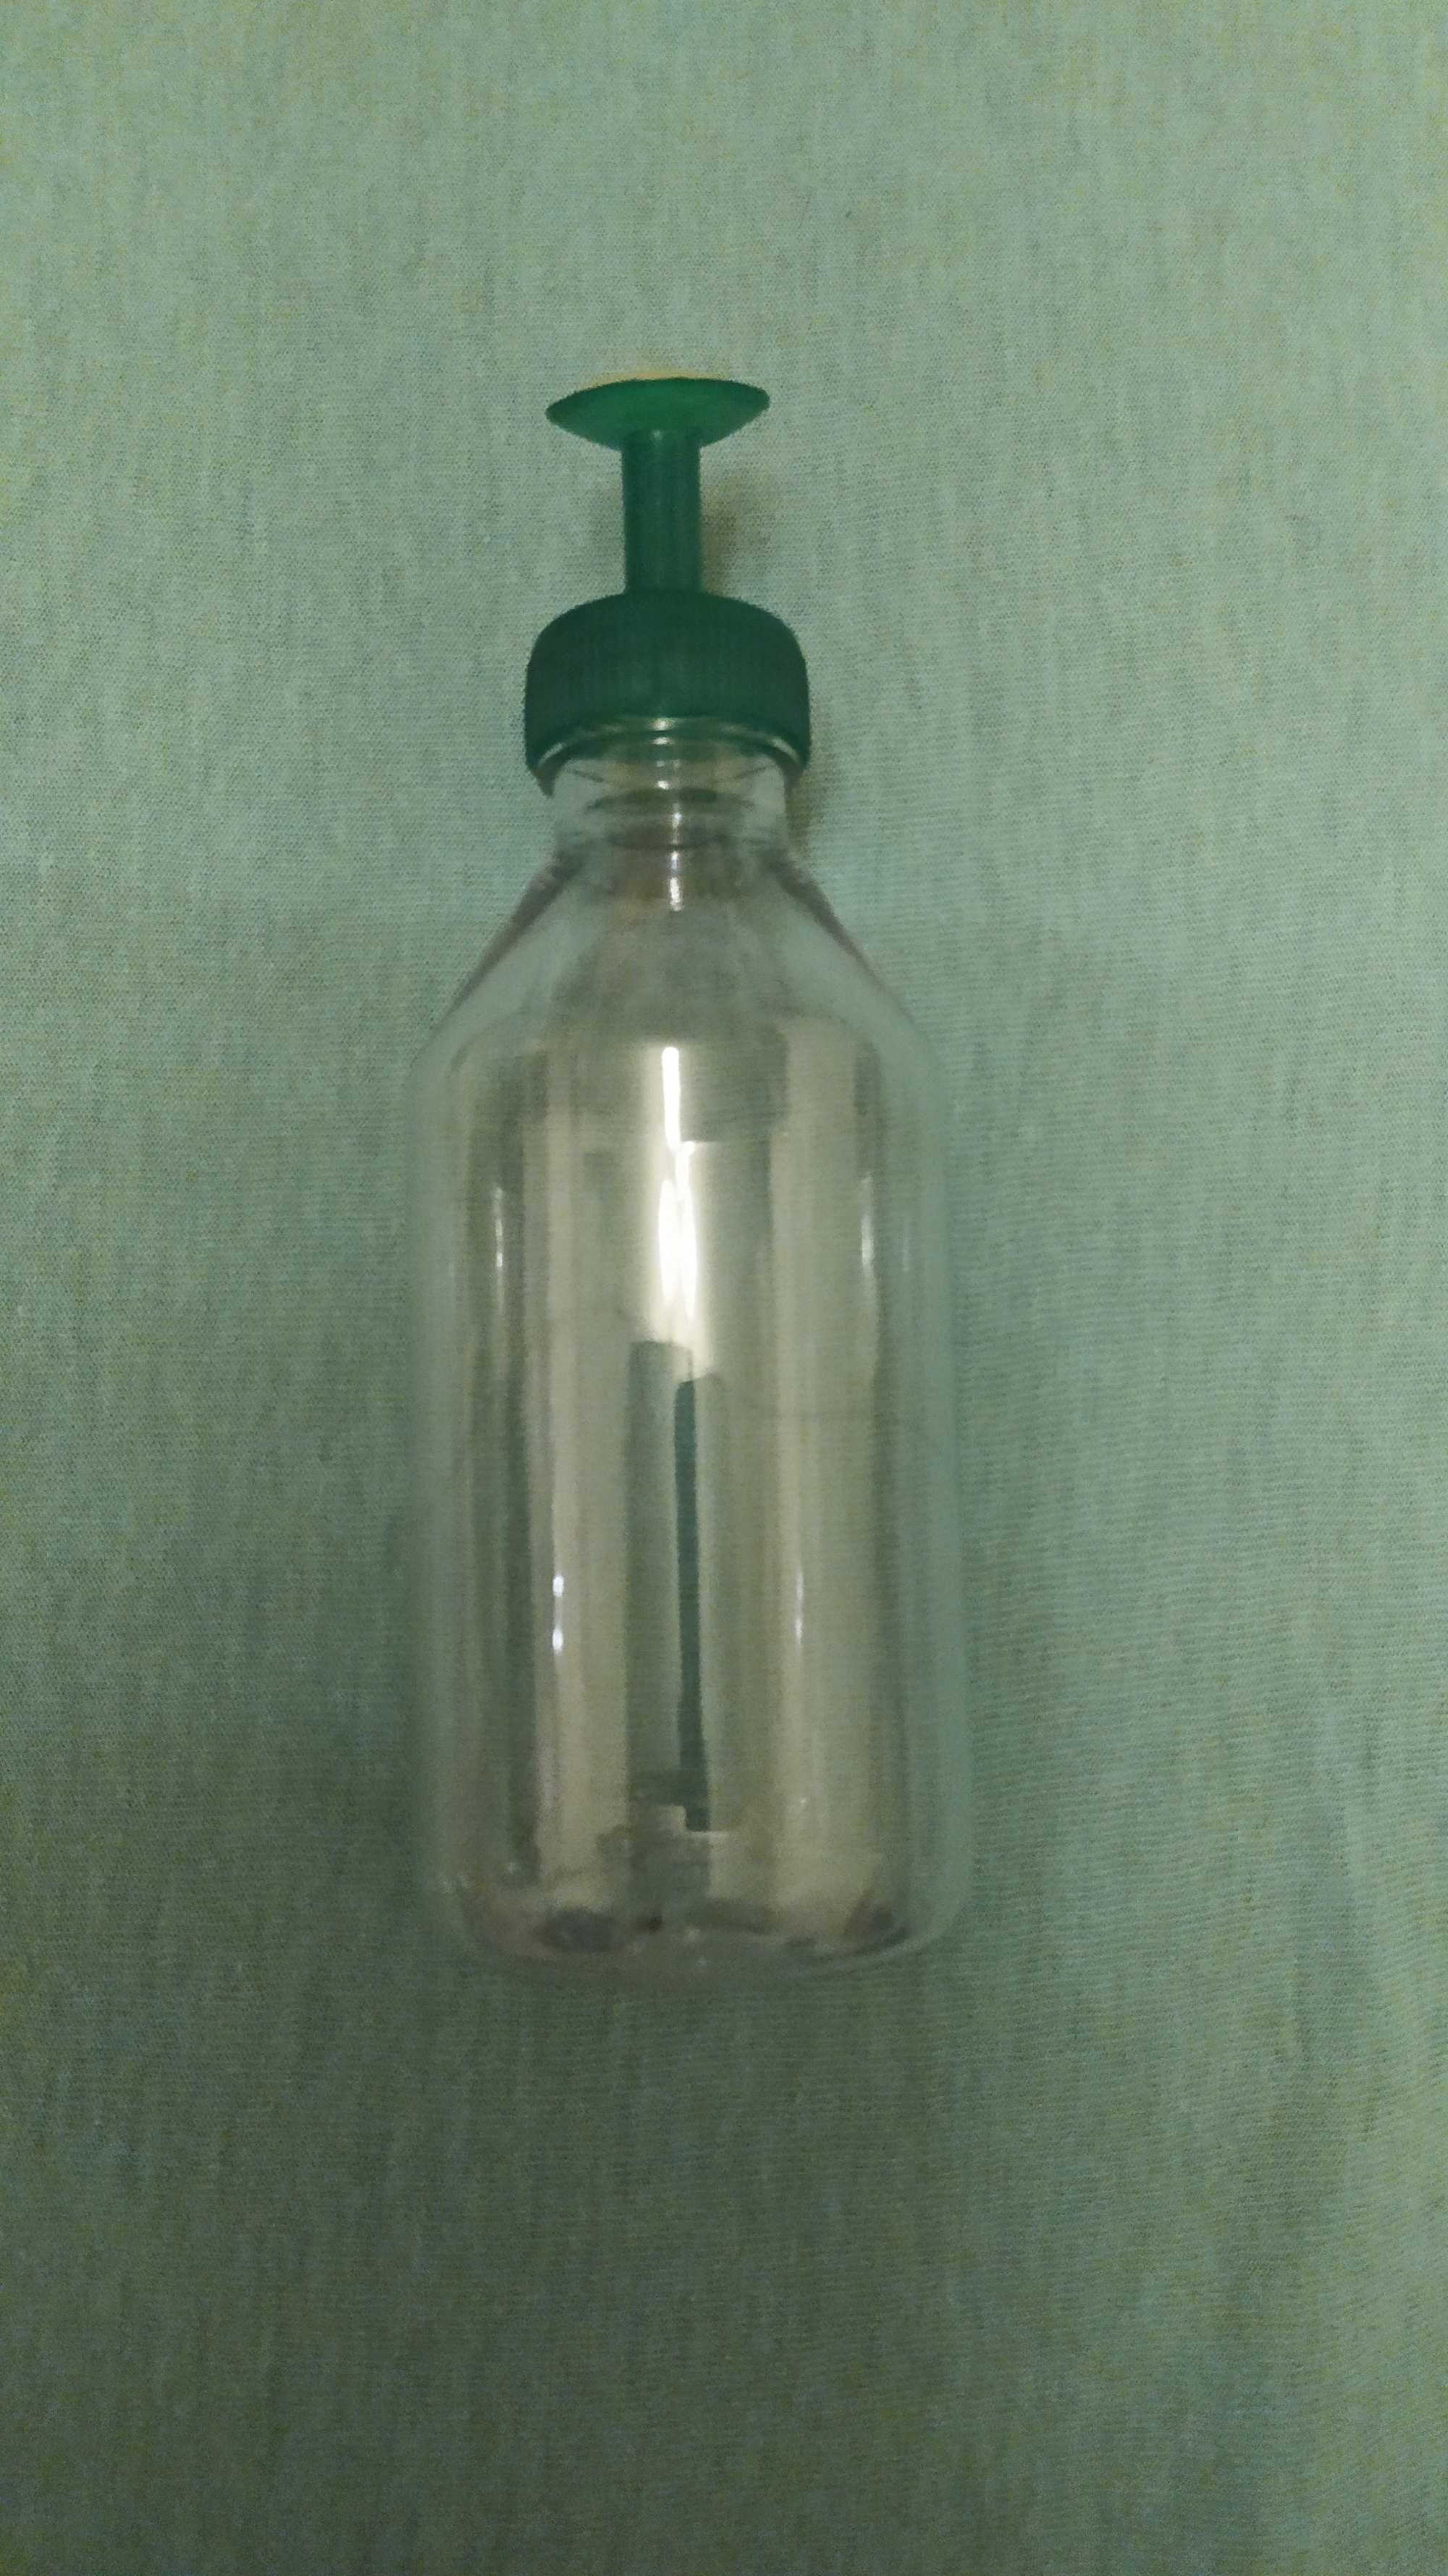 Butelka z tworzywa sztucznego 0,2l z rozpylaczem do nawadniania roślin